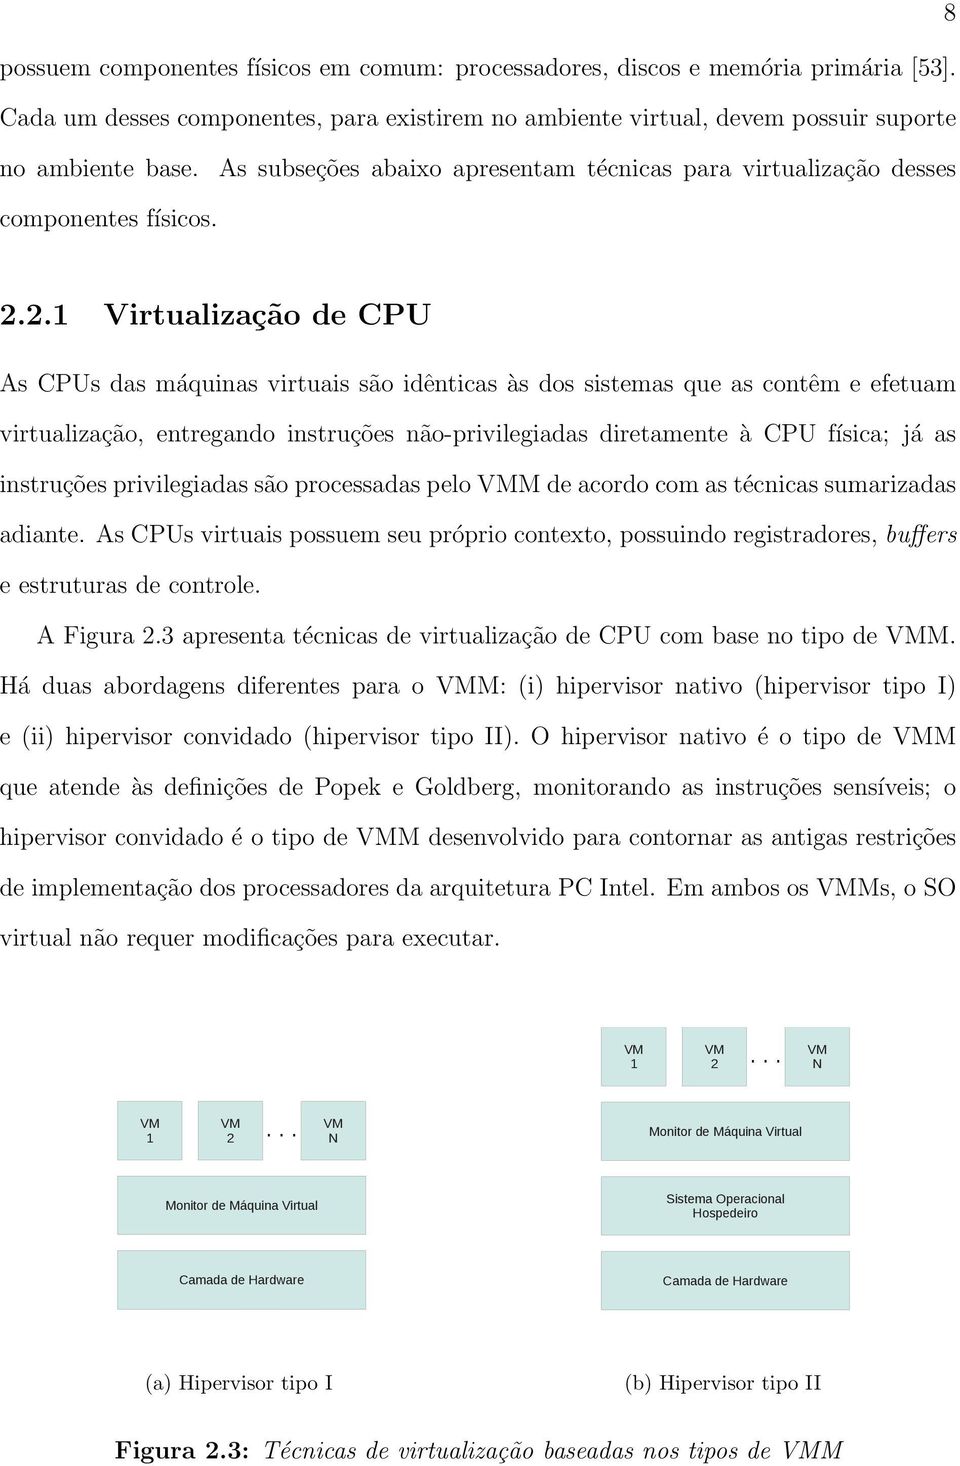 2.1 Virtualização de CPU As CPUs das máquinas virtuais são idênticas às dos sistemas que as contêm e efetuam virtualização, entregando instruções não-privilegiadas diretamente à CPU física; já as